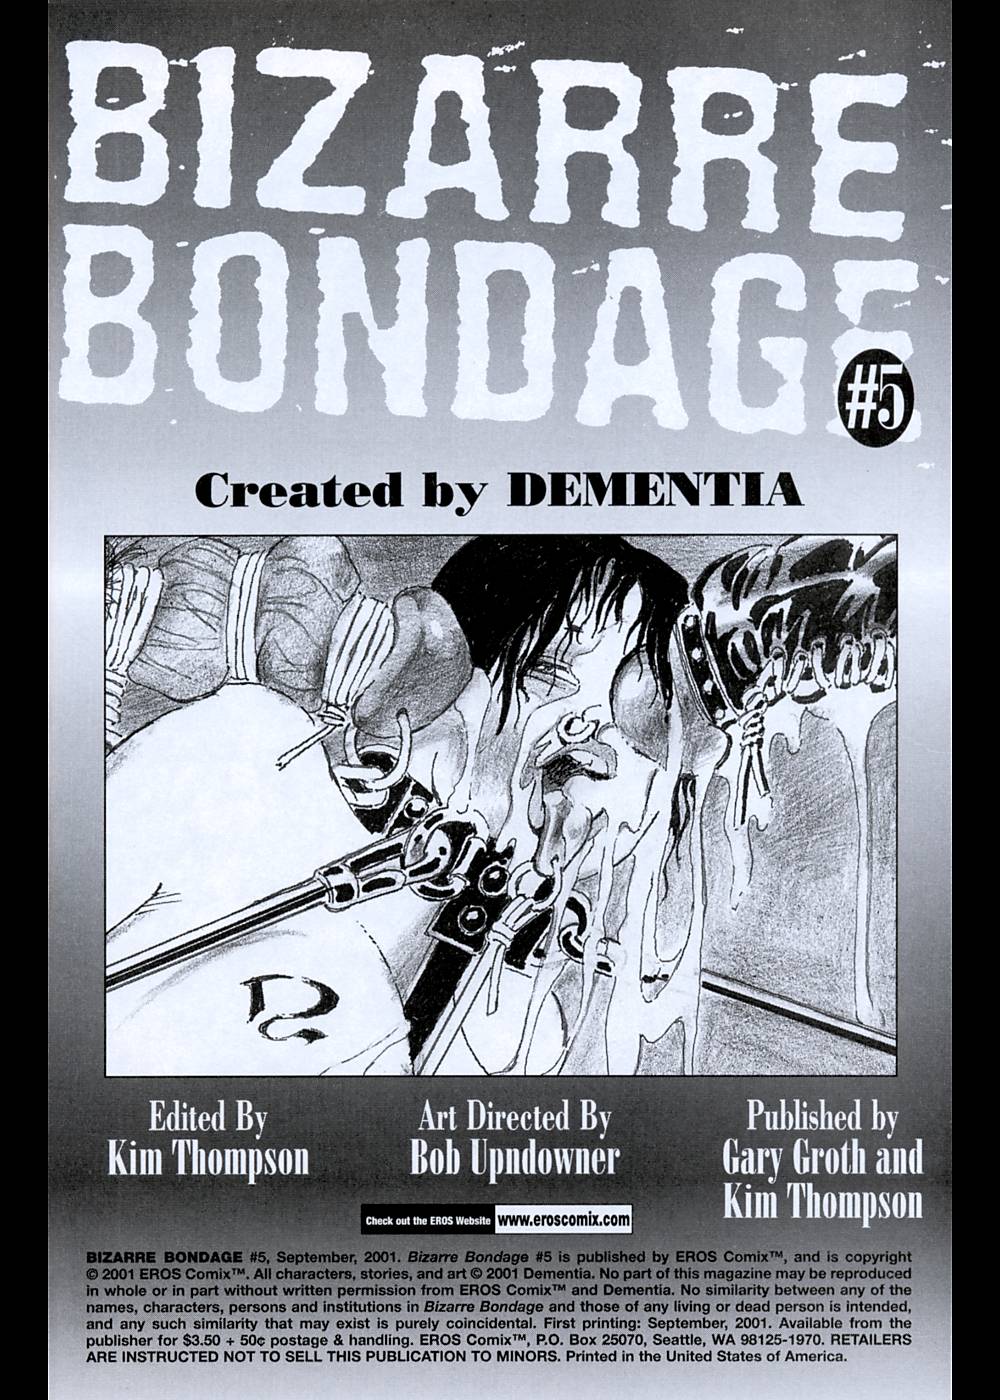 [deMentia] Bizarre Bondage 5 